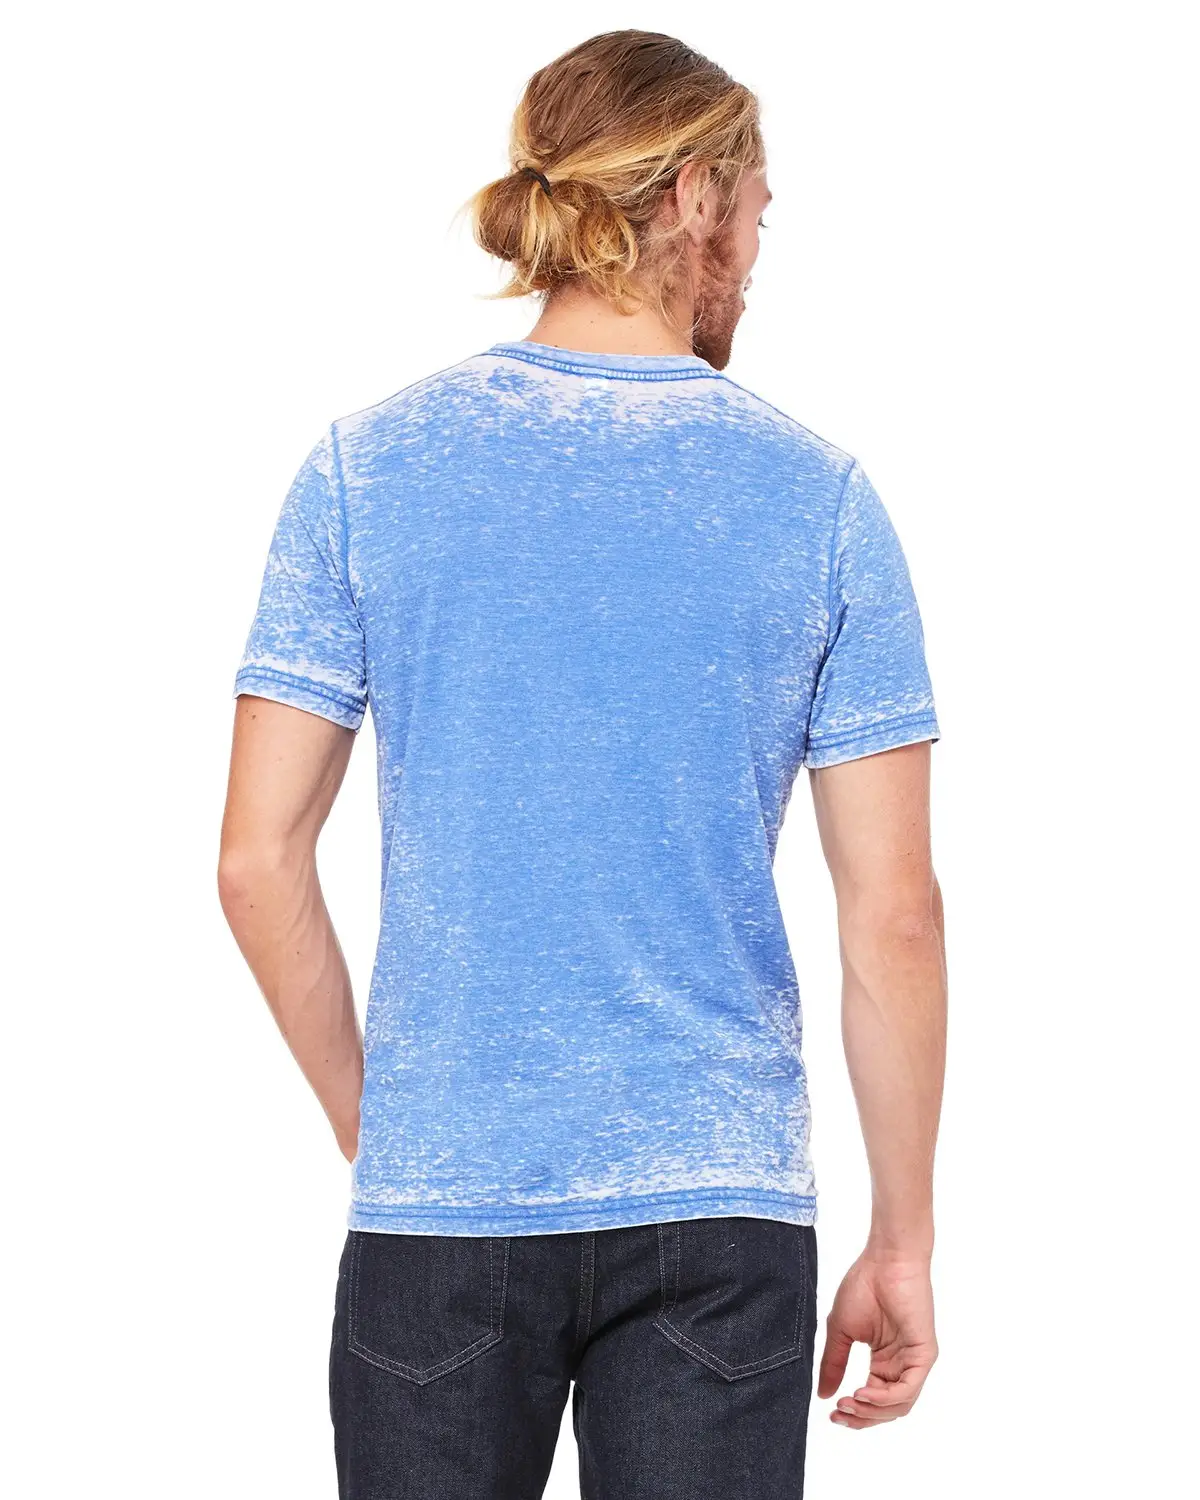 पुरुषों के लिए सबसे सस्ता एसिड वॉश डीटीजी एसिड वॉश टी-शर्ट डिस्ट्रेस्ड स्टोन एसिड वॉश टी शर्ट